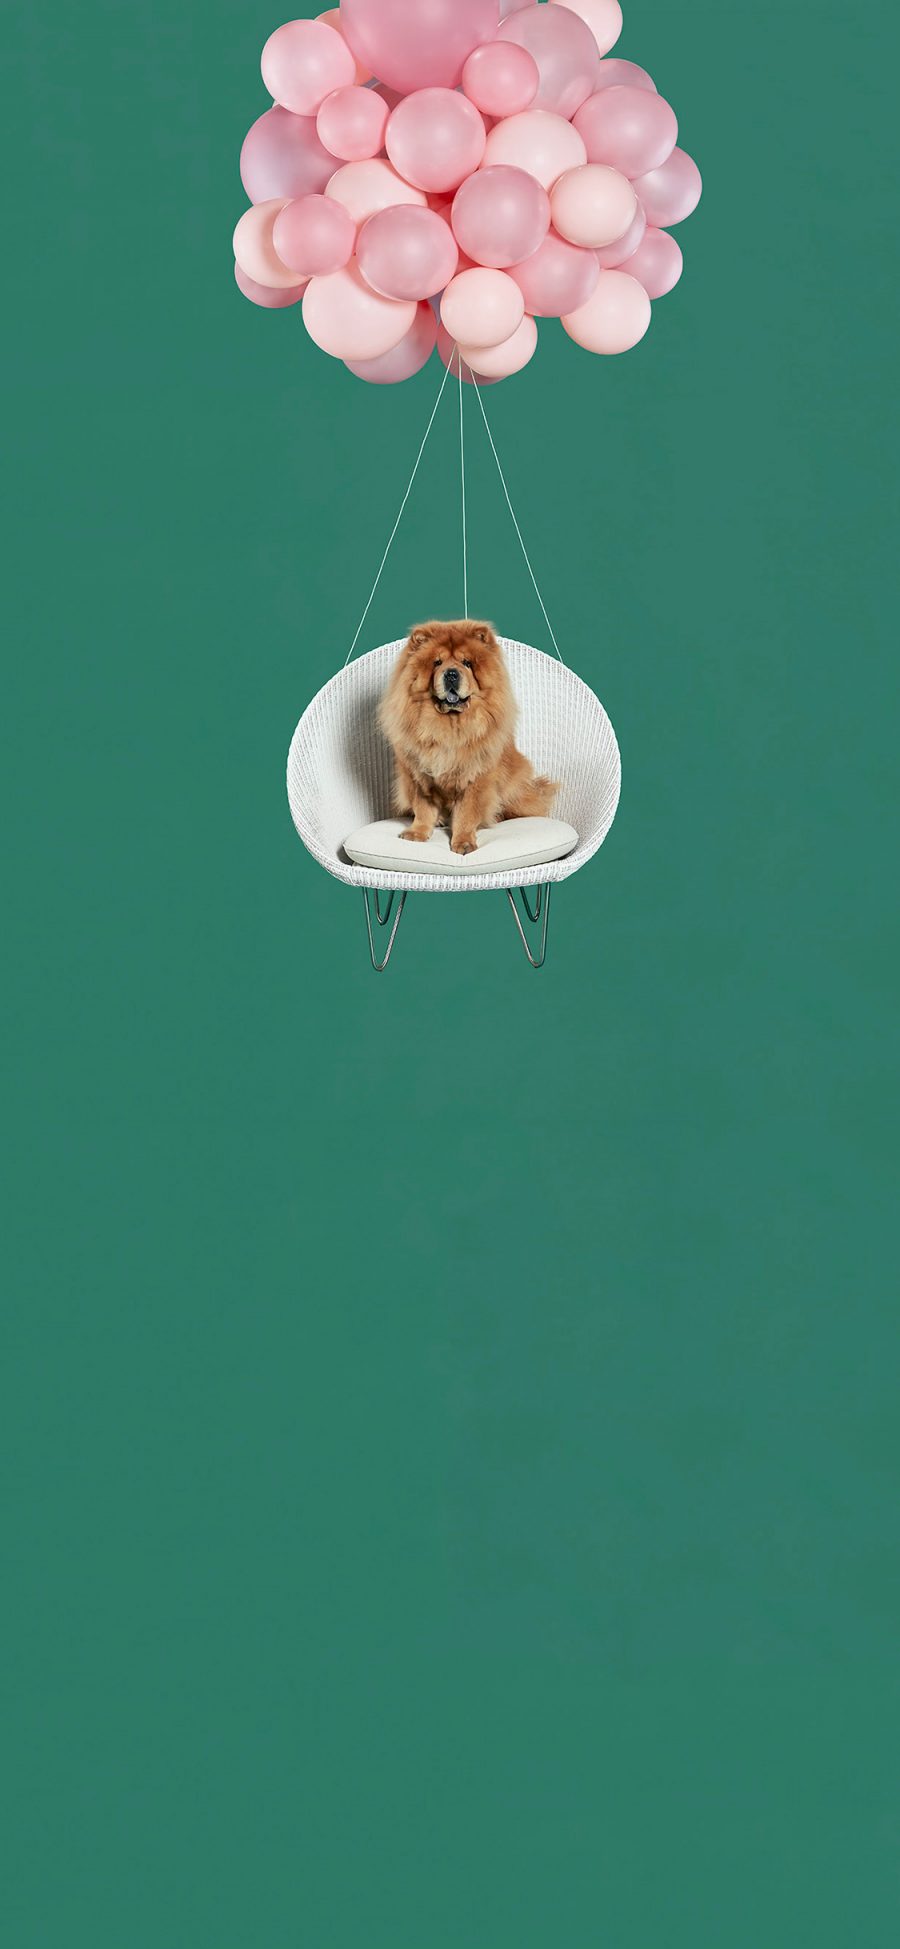 [2436×1125]绿色背景 粉色气球 宠物狗 松狮犬 苹果手机壁纸图片